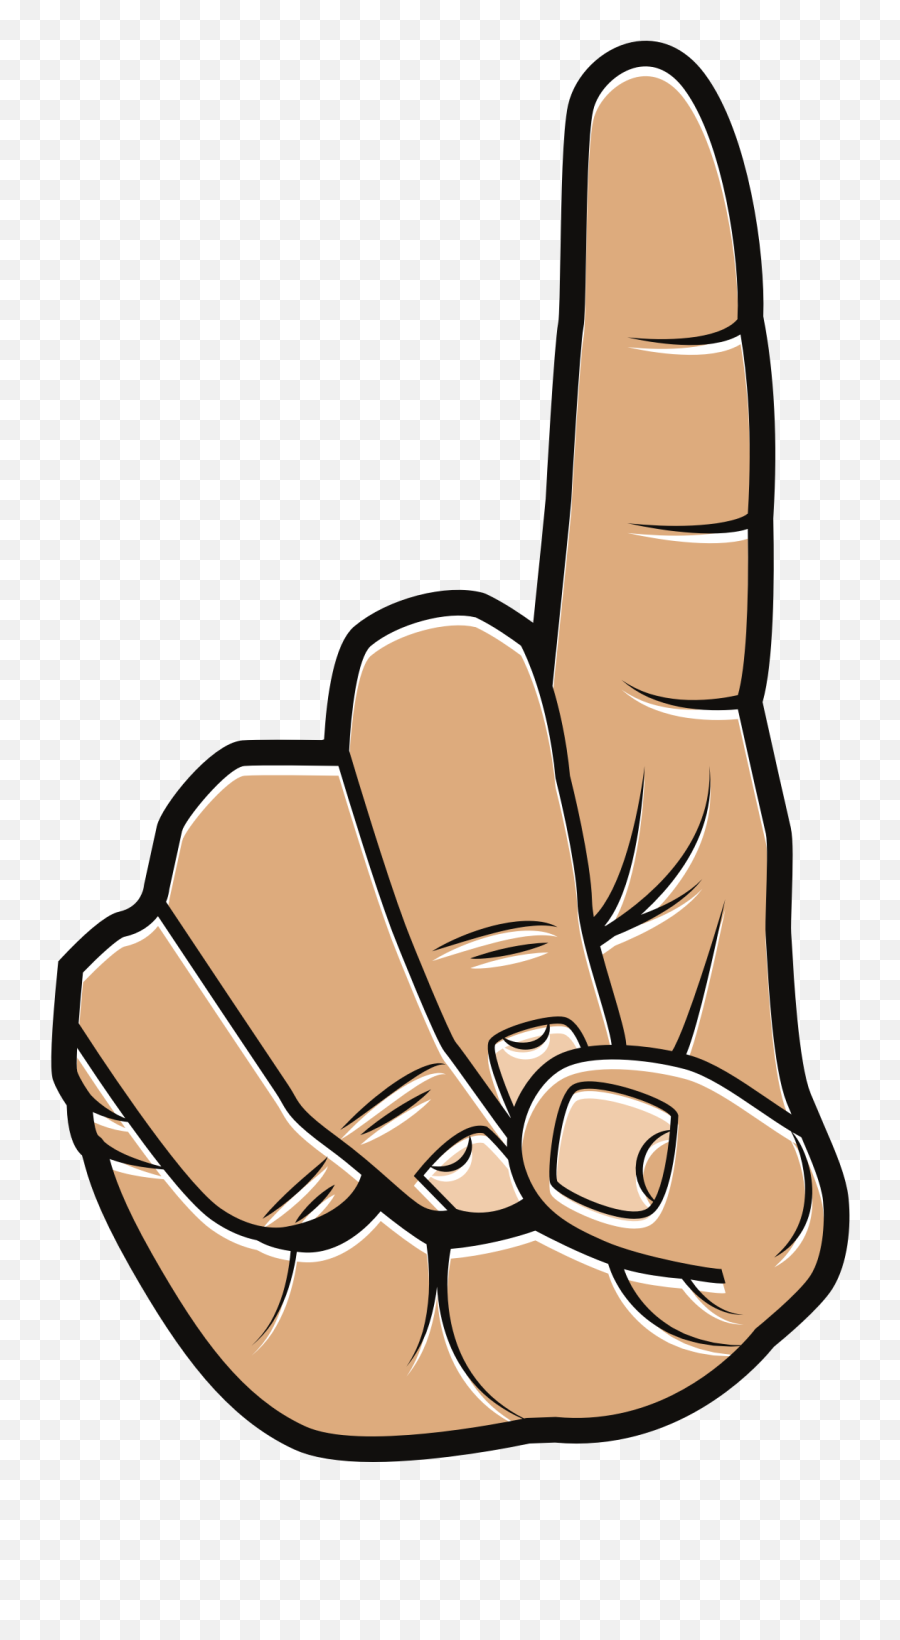 Number One - Openclipart Emoji,Finger Pointing Up Emoji